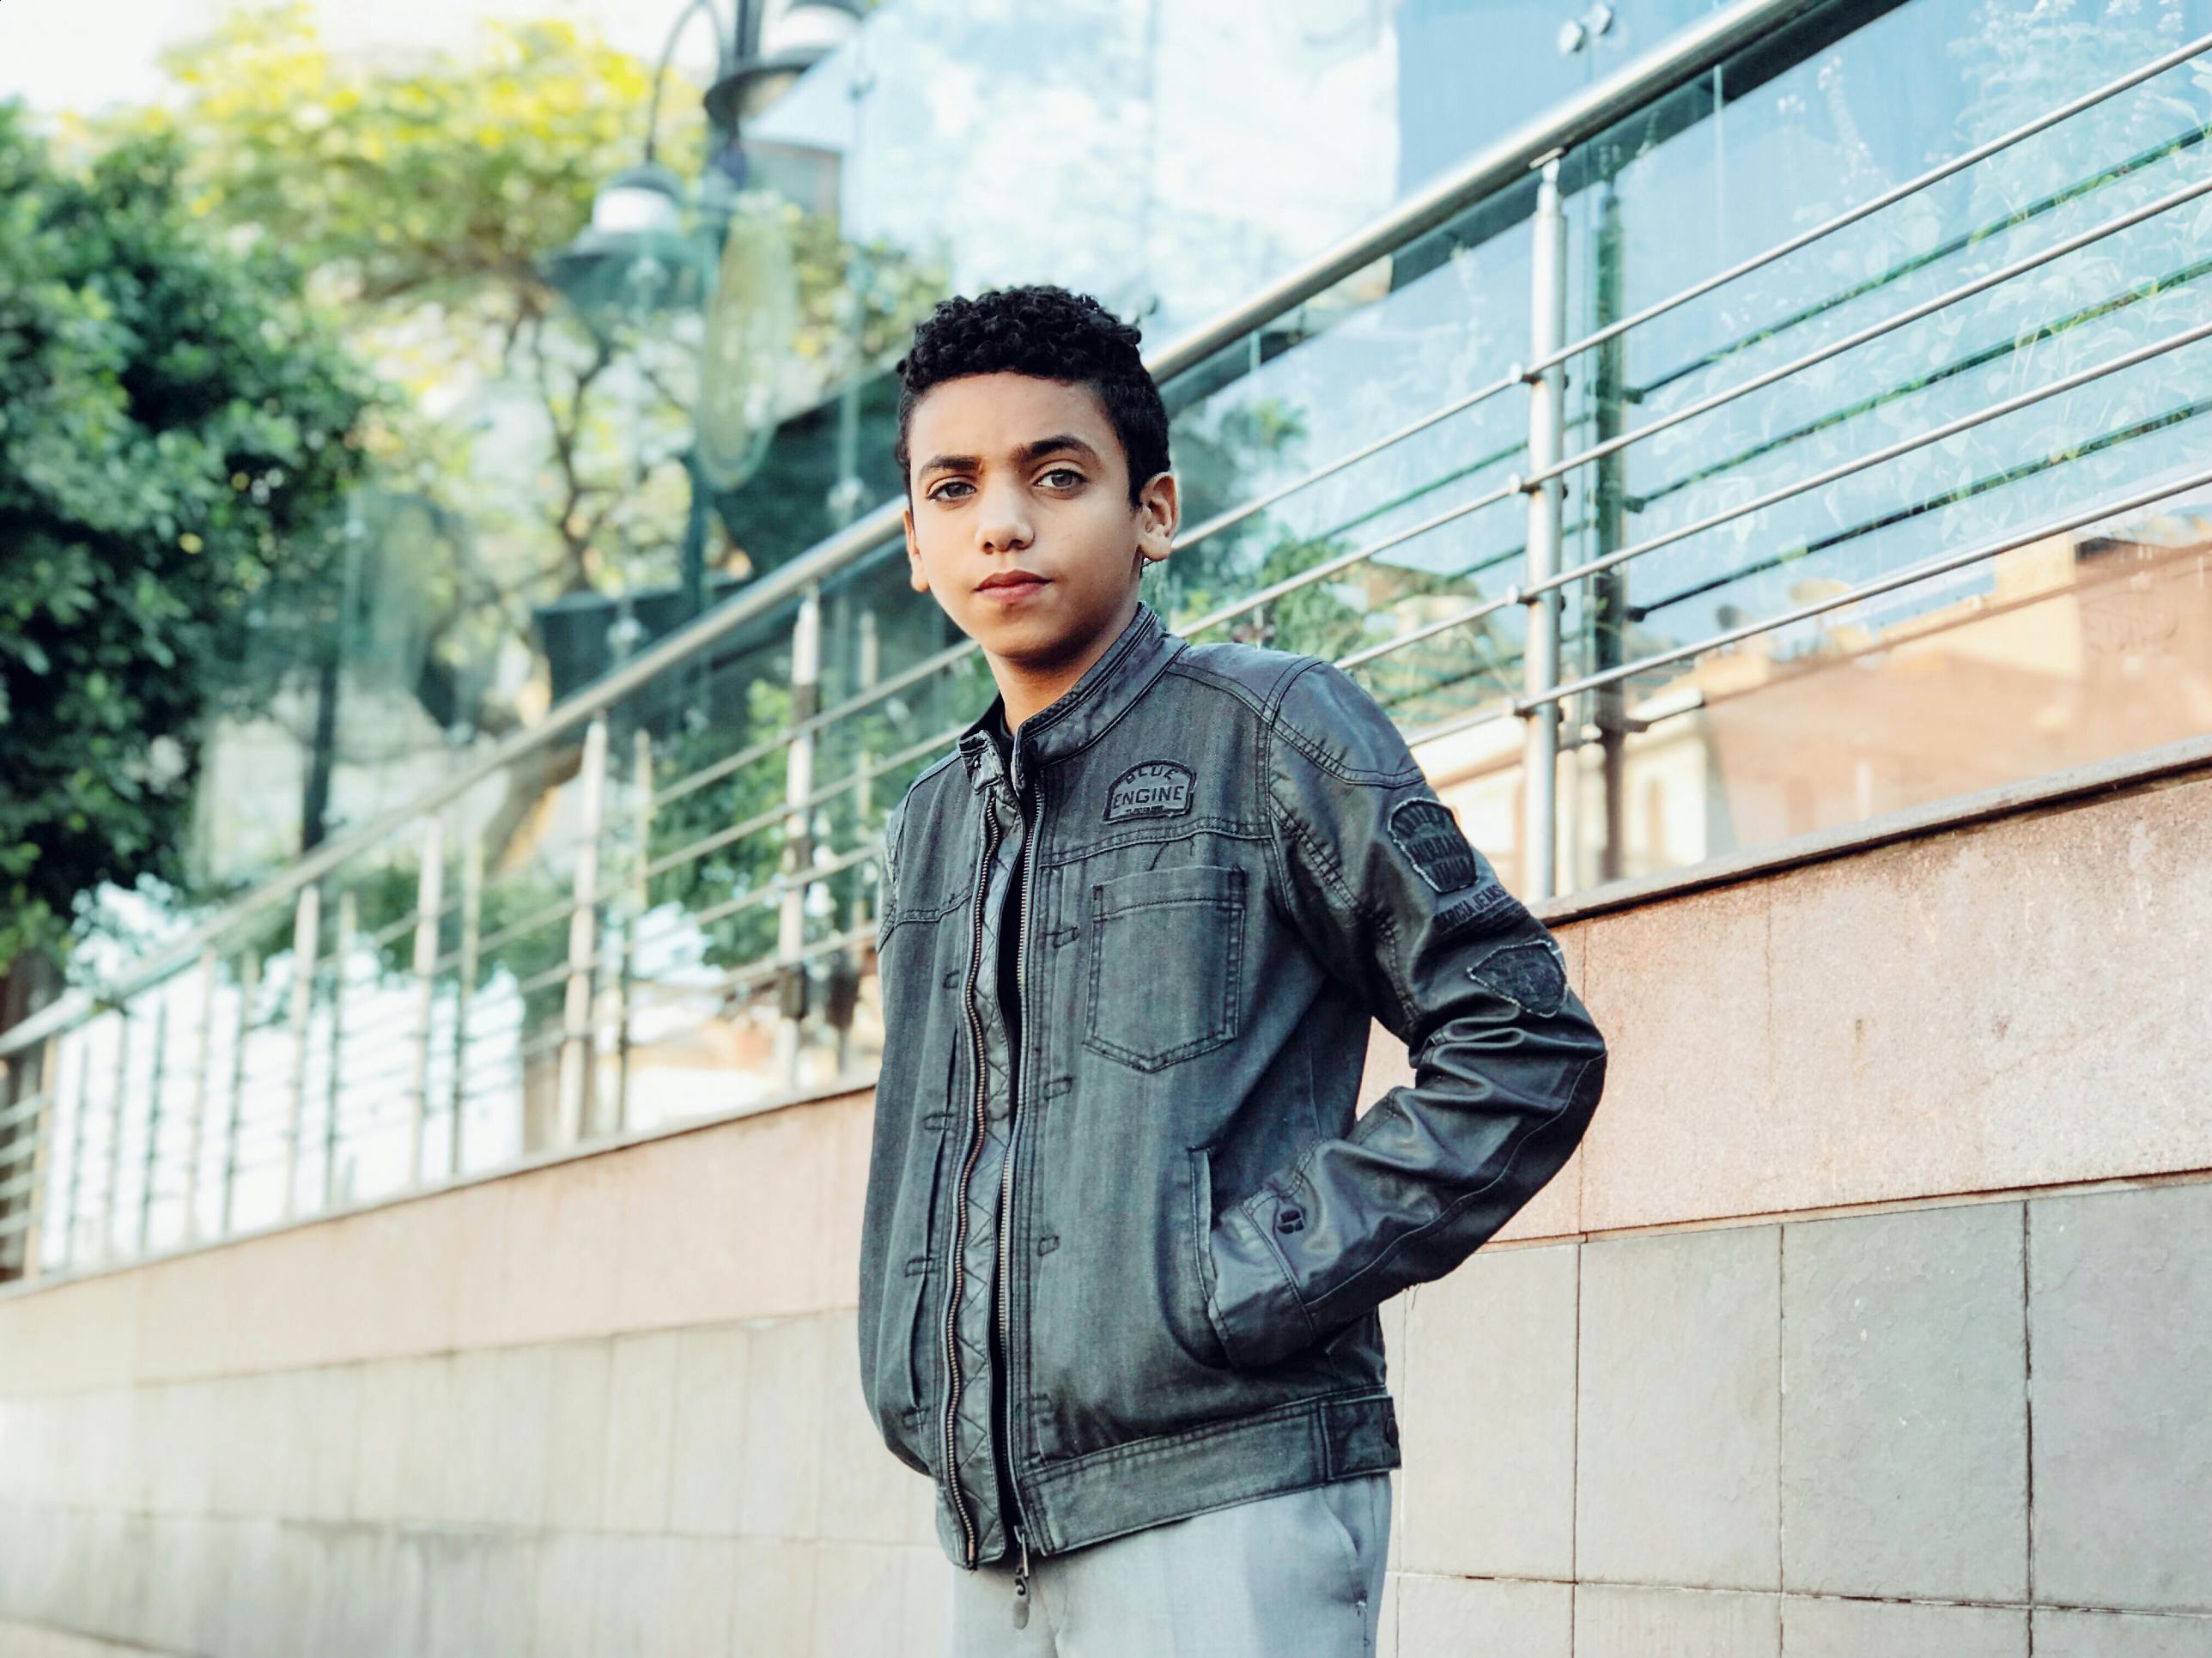 photo of boy wearing jacket